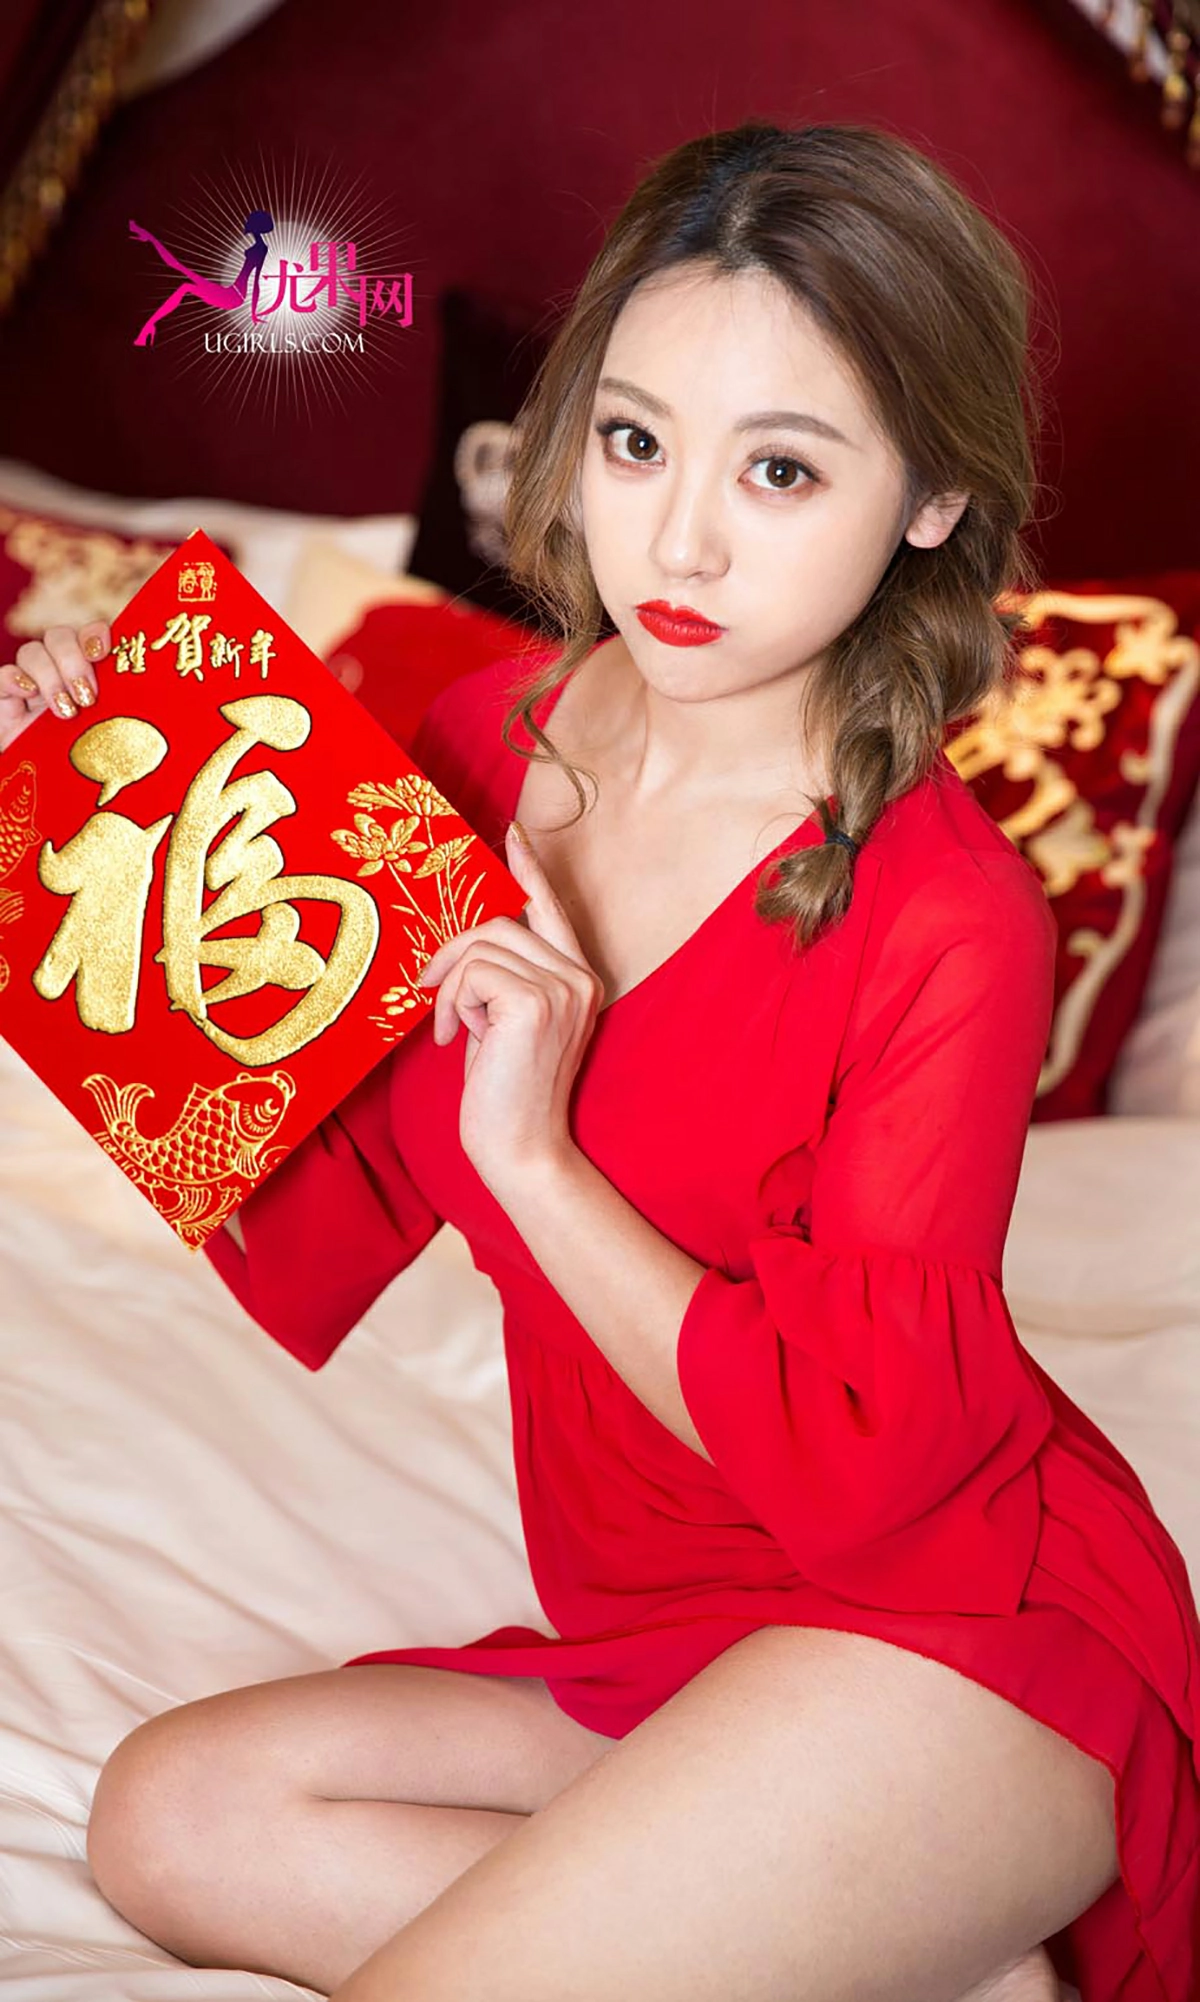 [爱尤物]NO.265 美人闹新年 何曼丽&张鑫 红色睡衣与情趣肚兜性感私房写真集,4691